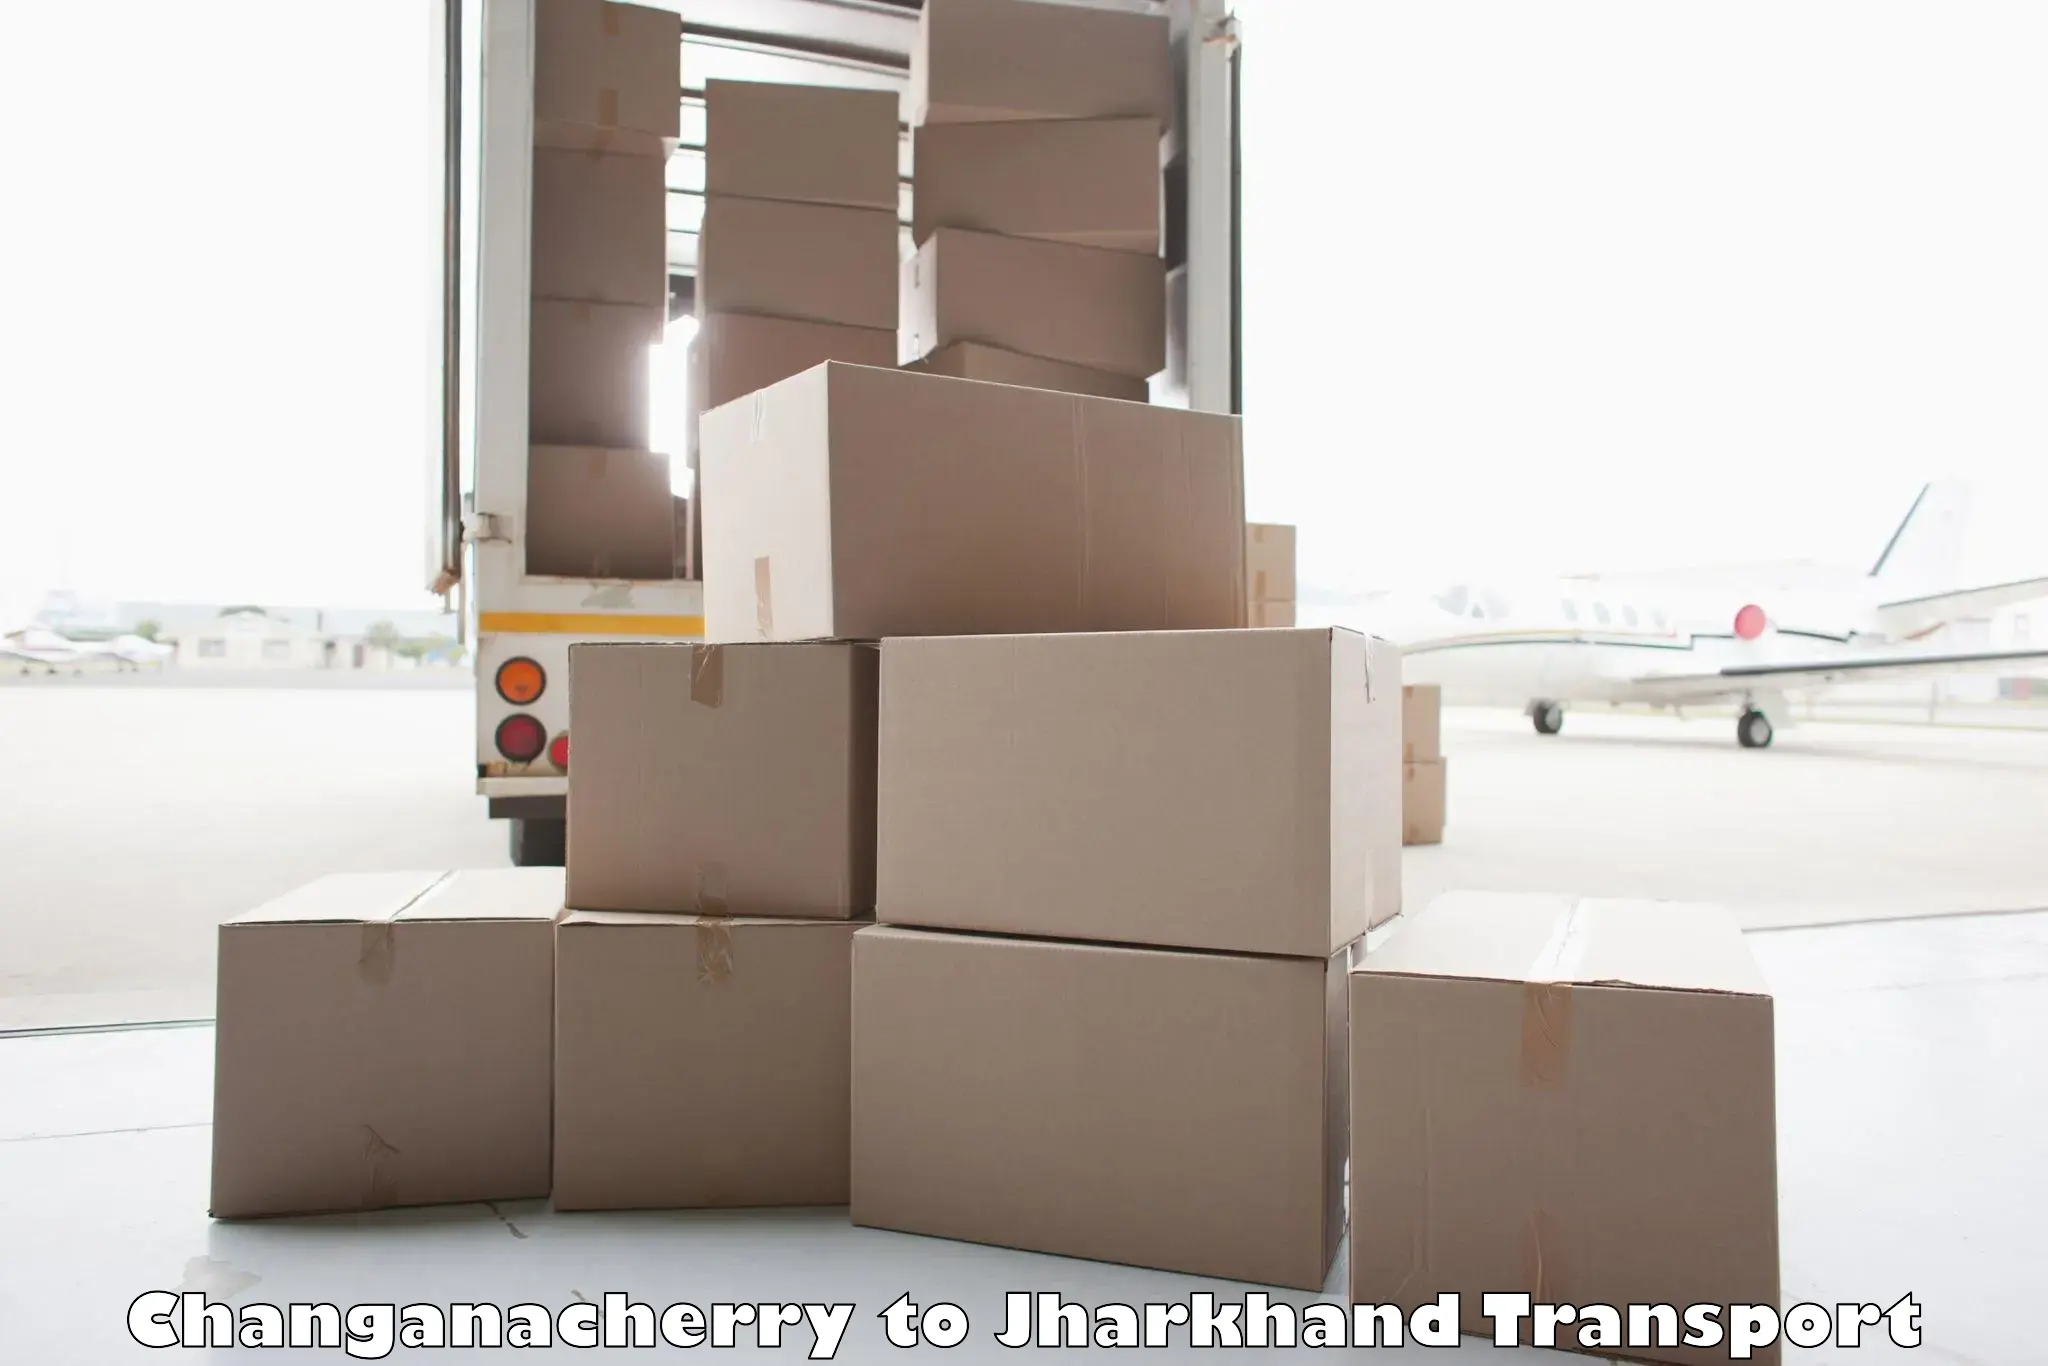 Shipping partner Changanacherry to Bokaro